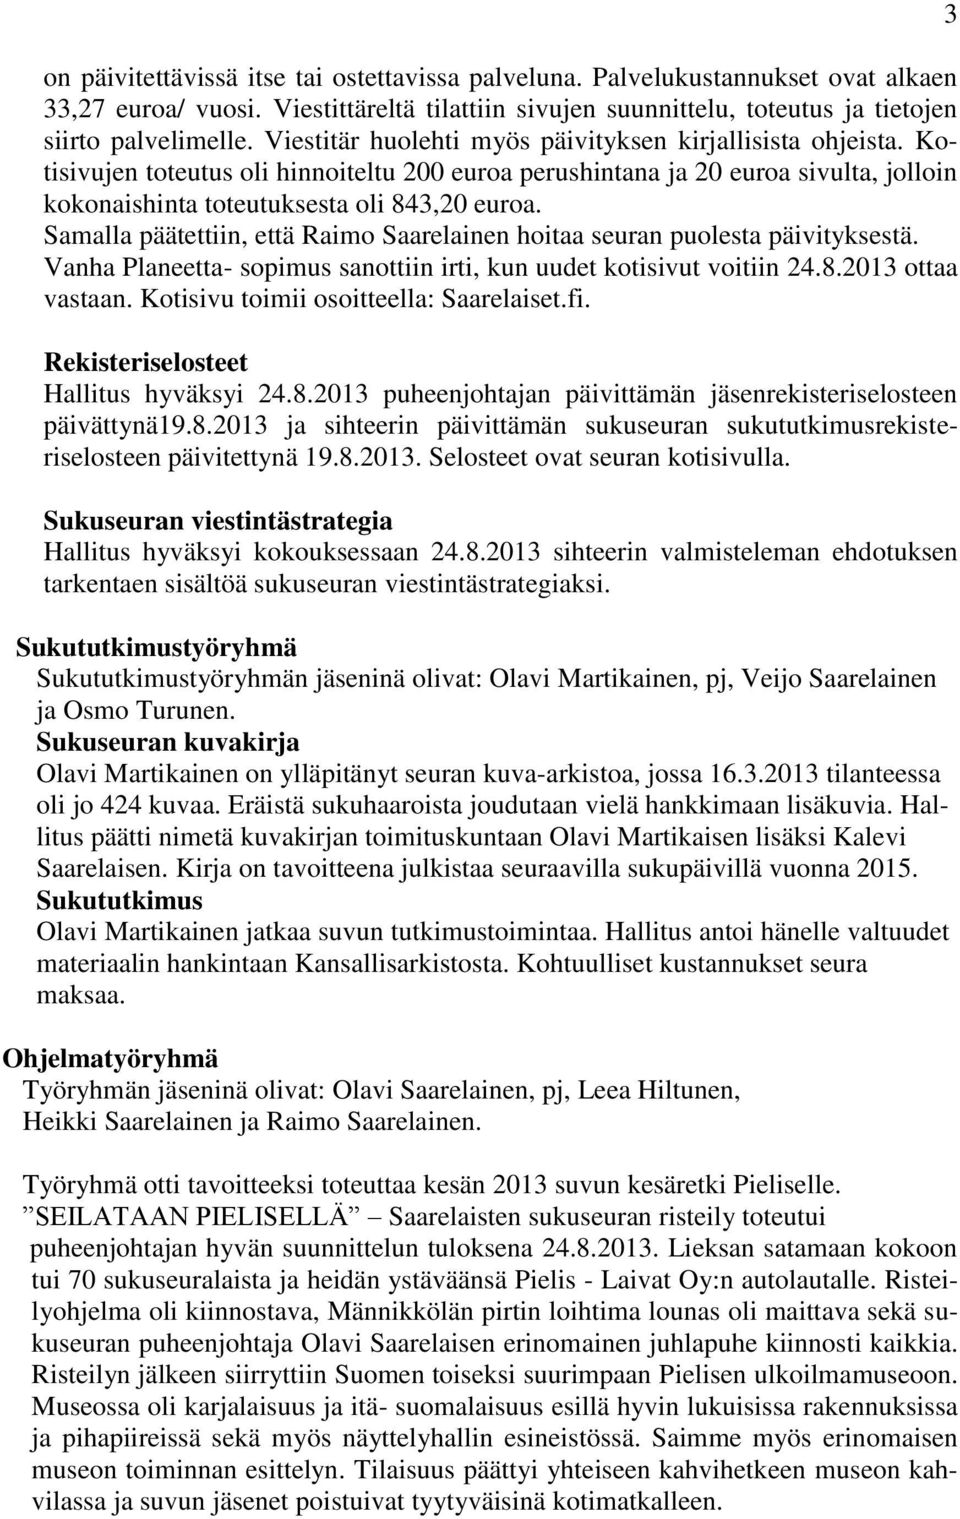 Samalla päätettiin, että Raimo Saarelainen hoitaa seuran puolesta päivityksestä. Vanha Planeetta- sopimus sanottiin irti, kun uudet kotisivut voitiin 24.8.2013 ottaa vastaan.